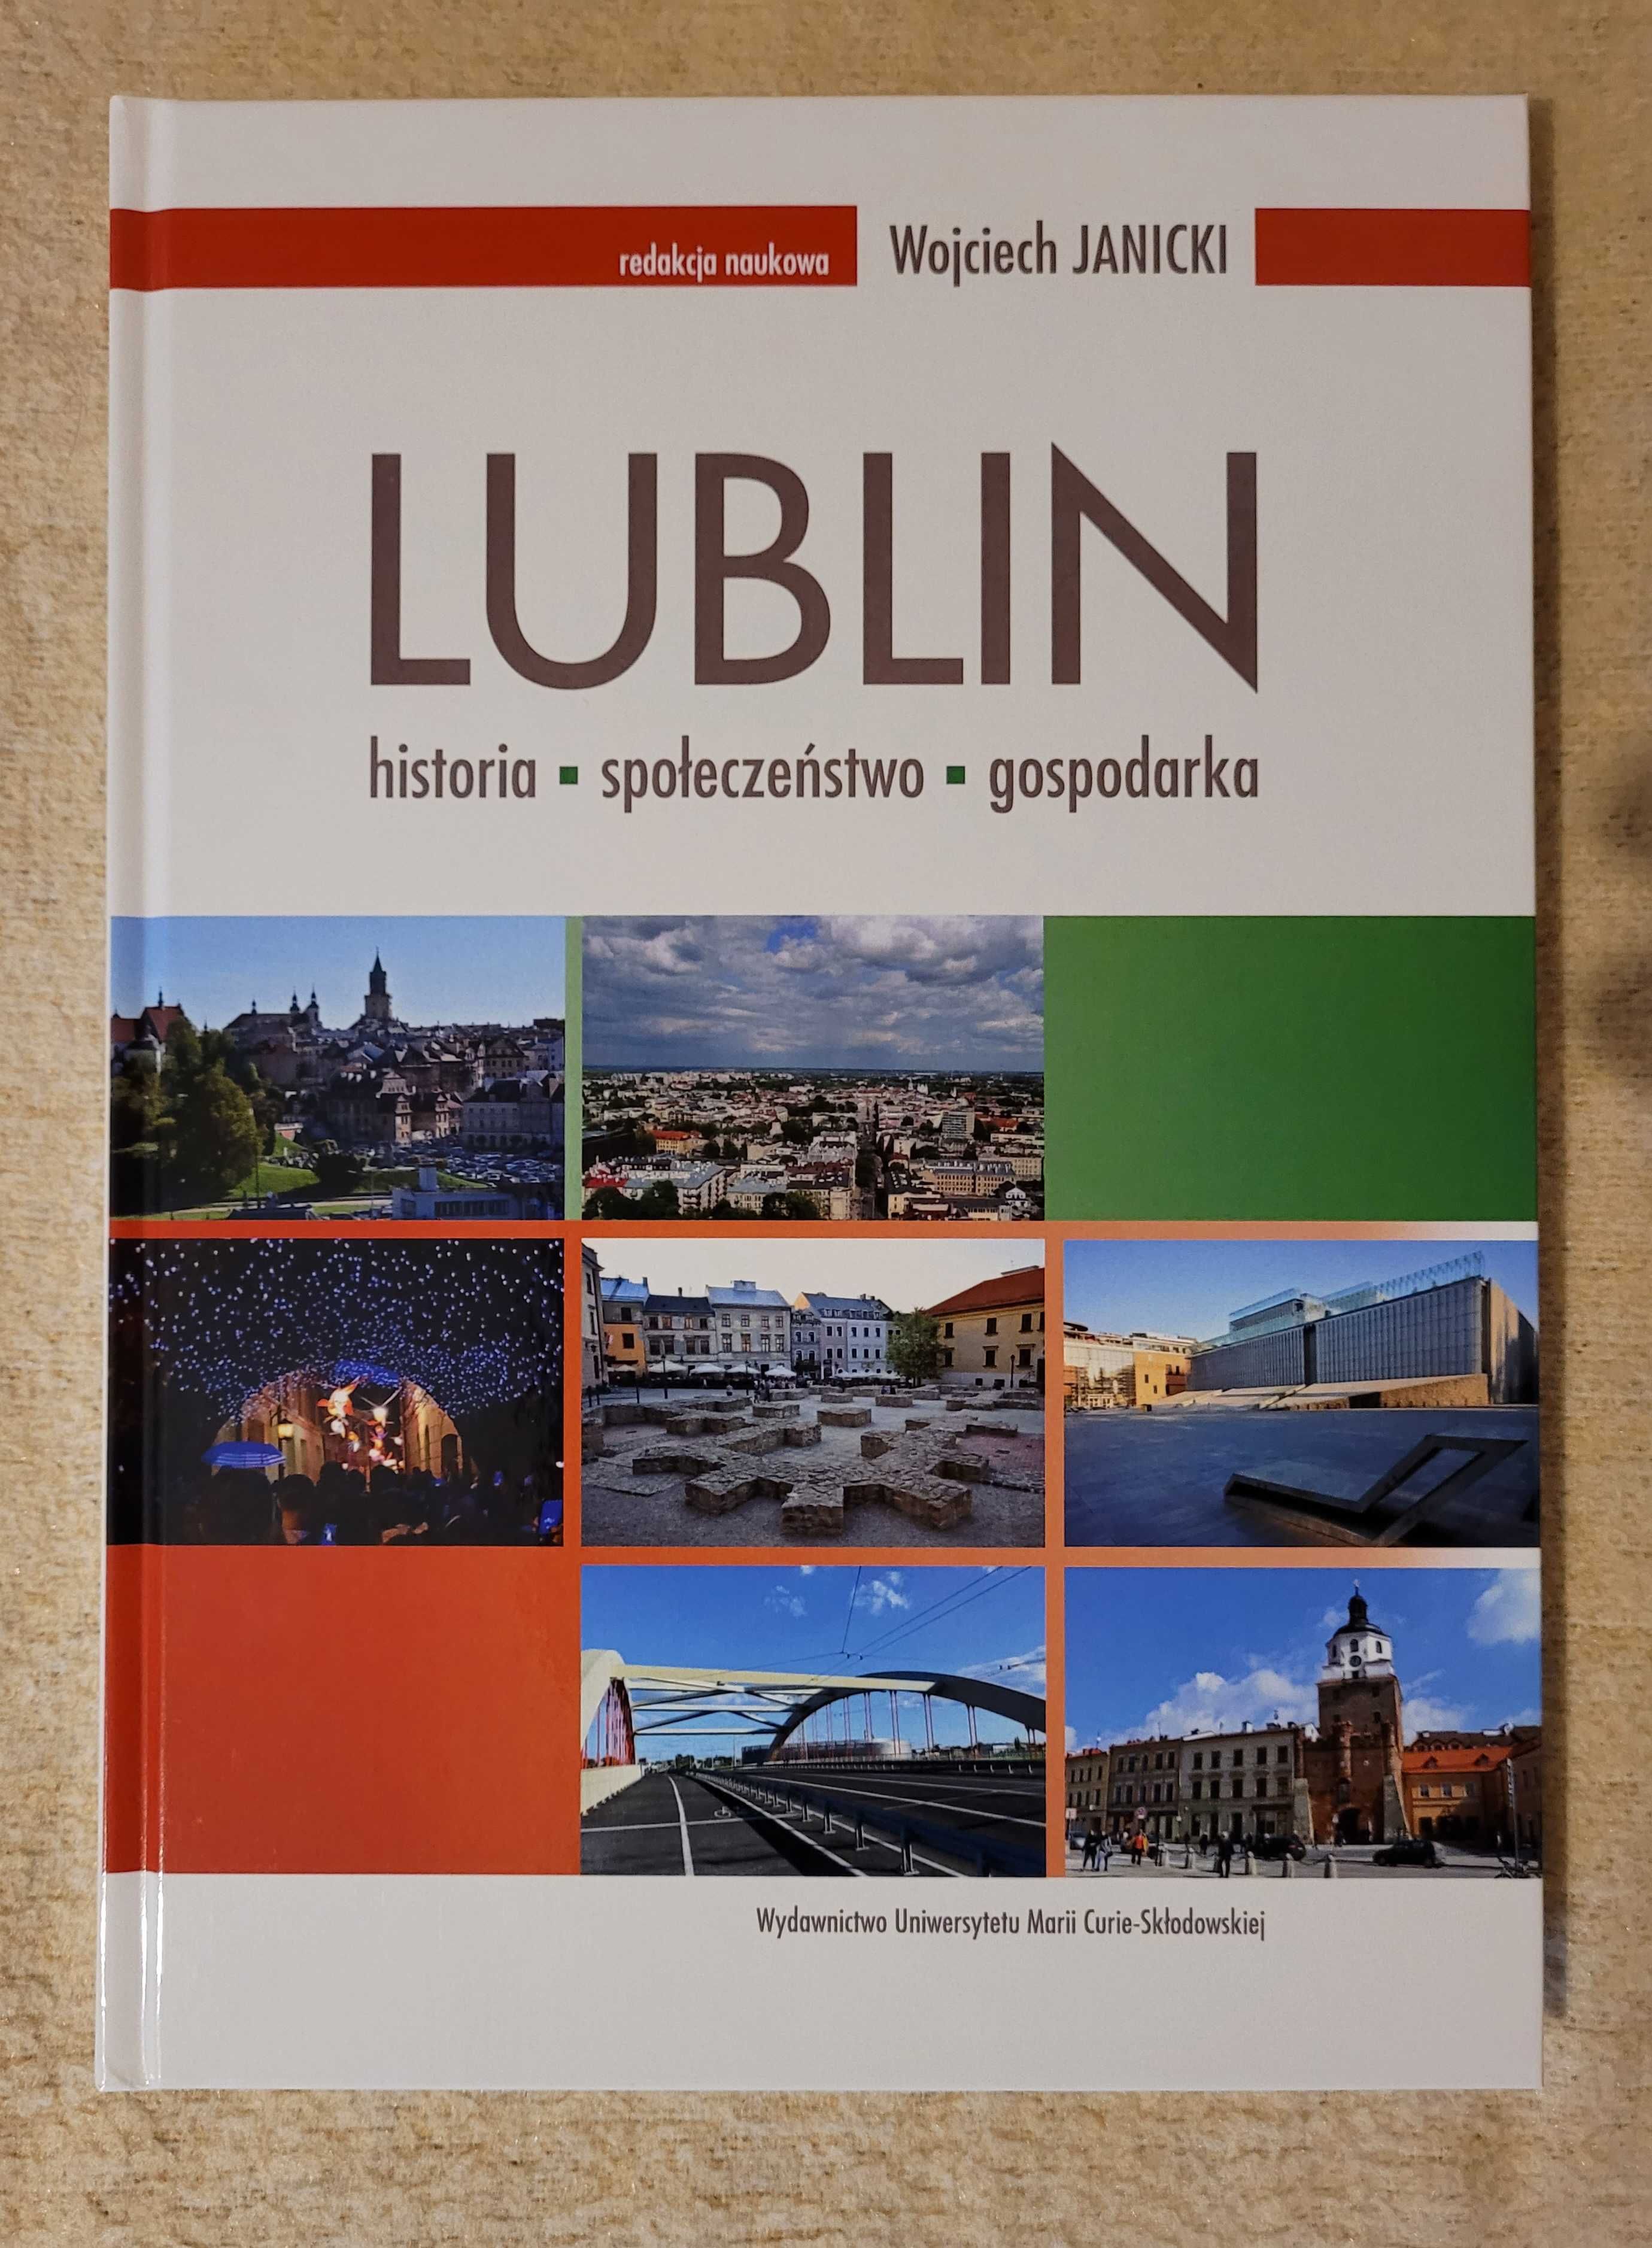 Lublin: historia - społeczeństwo - gospodarka (red. Wojciech Janicki)